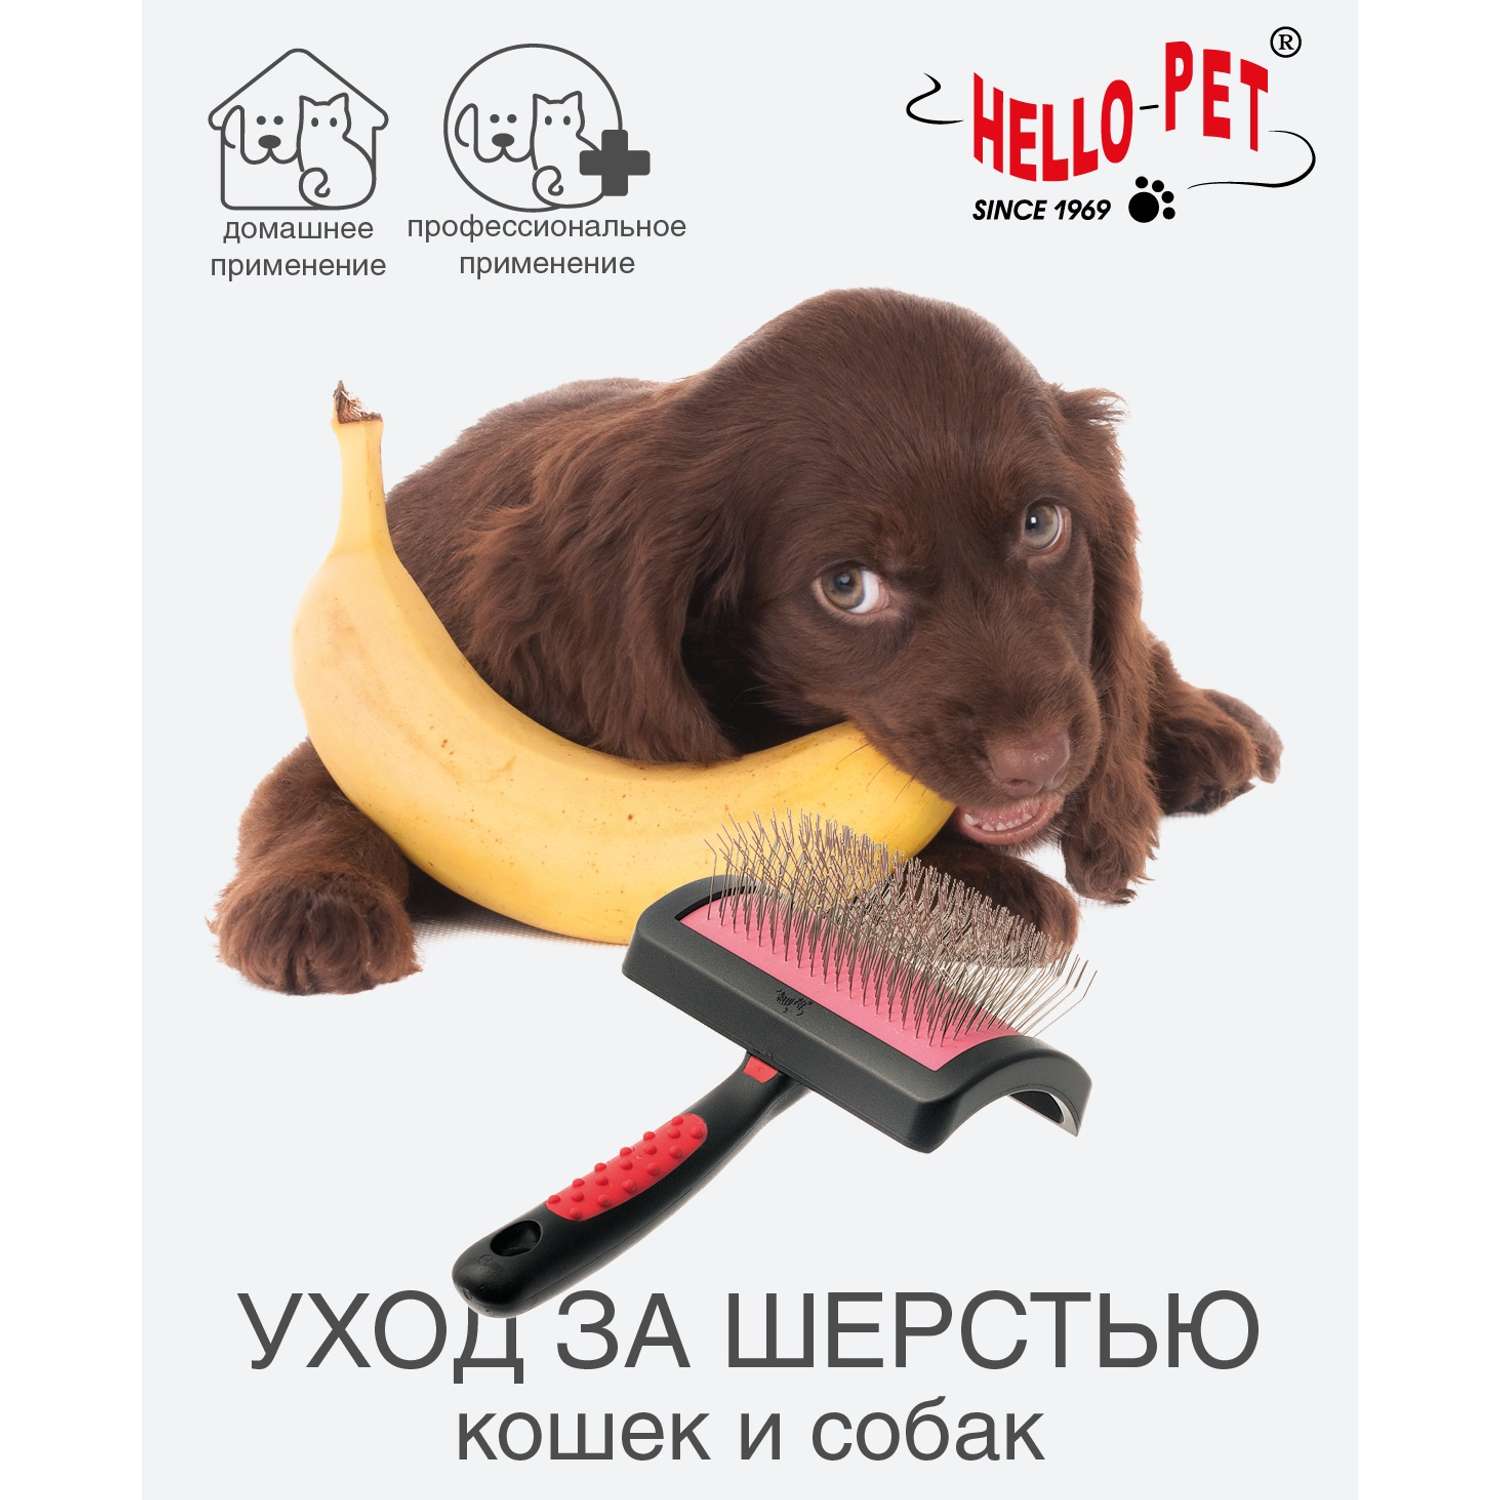 Пуходерка Hello Pet профессиональная мягкий корд с длинным зубом средняя - фото 2